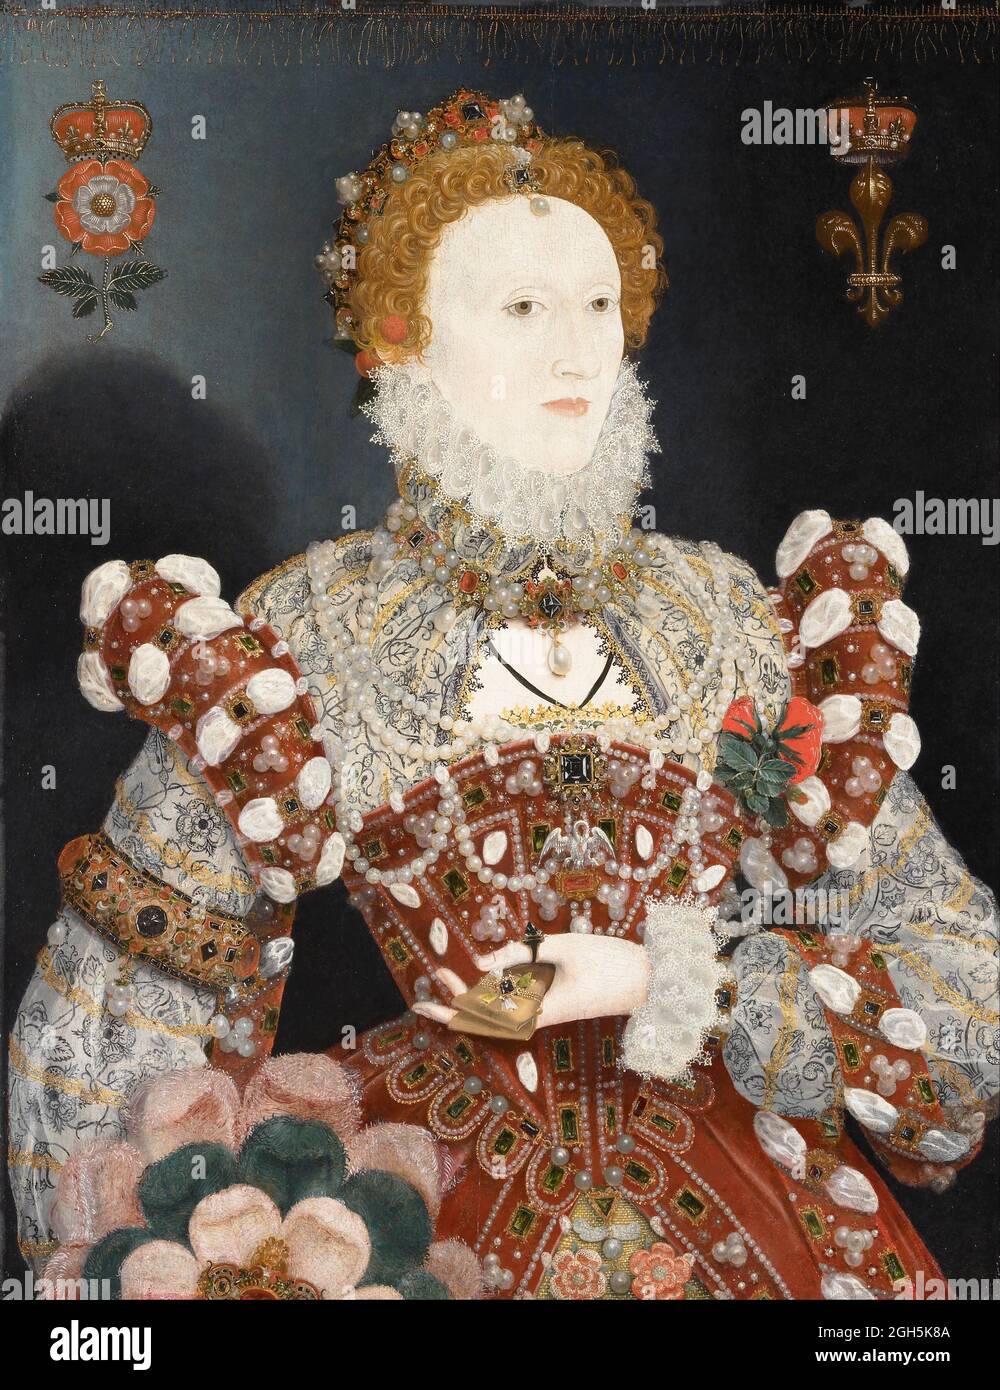 Ein Porträt von Nichola Hilliard über Königin Elizabeth I., die von 1558 bis 1603 Königin von England war Stockfoto